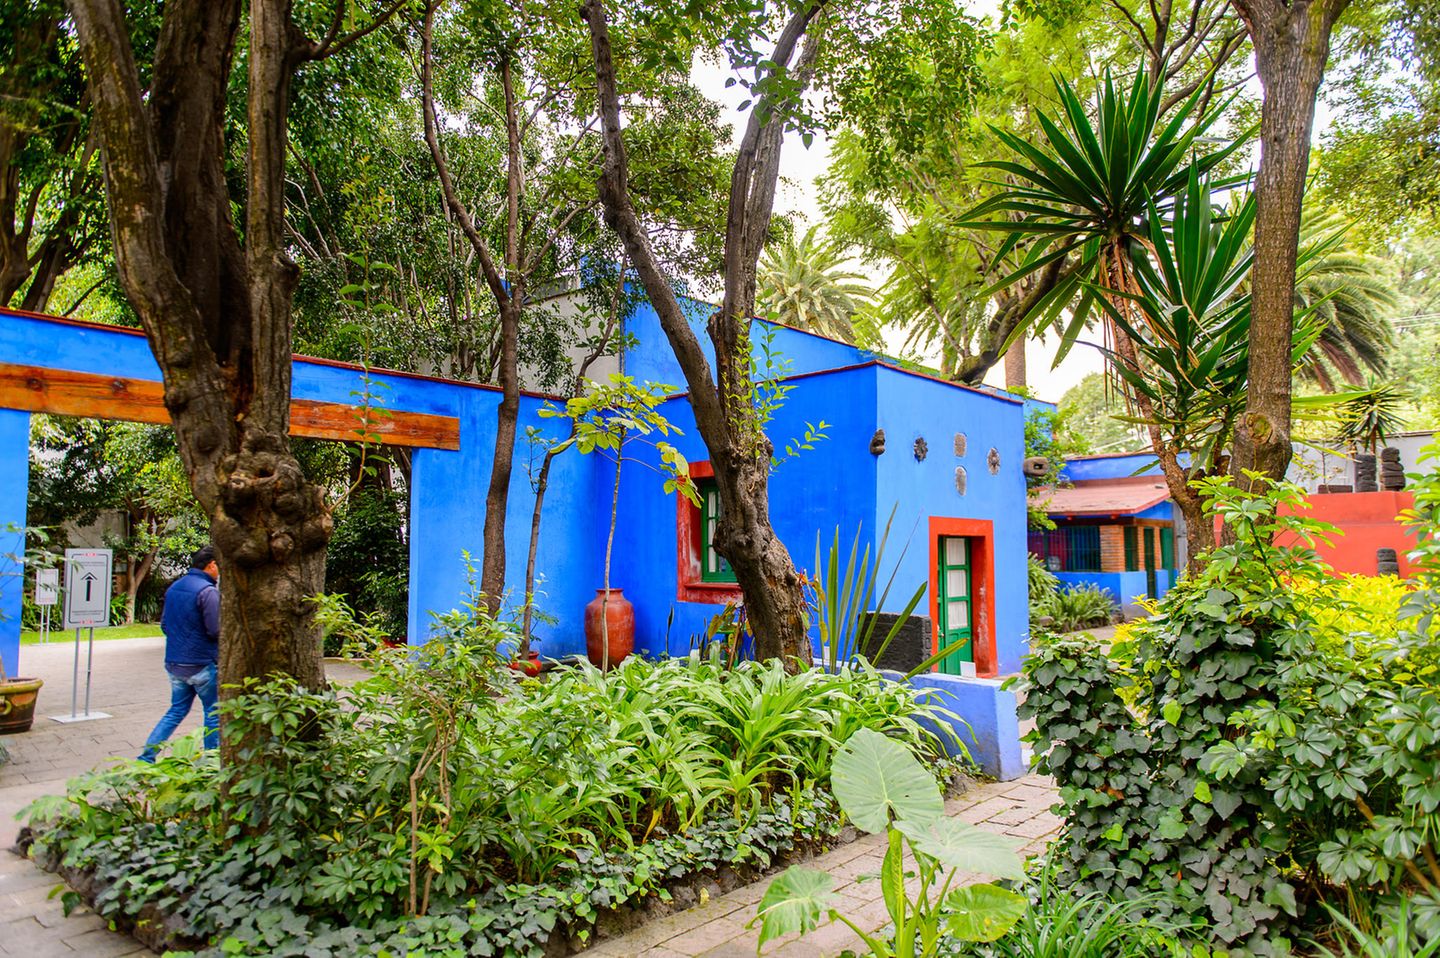 Die Künstlerin Frida Kahlo (1907–1954) ist zur Ikone der Popkultur avanciert. Doch wo kommt sie eigentlich her? Fans pilgern in das Casa Azul nach Mexiko Stadt. In dem wunderschönen blauen Haus wurde sie geboren und dort starb sie auch. Fast ihr ganzes Leben verbrachte sie hinter den blauen Mauern, zeitweise mit ihrem Mann, dem Muralisten Diego Rivera. Das Haus ist heute ein Museum und die umfassendste Hommage an Frida Kahlos Werk, das von großem Schmerz geprägt ist. An Bedeutung übertrifft sie längst ihren berühmten Mann: Eines ihrer Selbstporträts war das erste mexikanische Kunstwerk, das der Louvre in Paris erwarb.